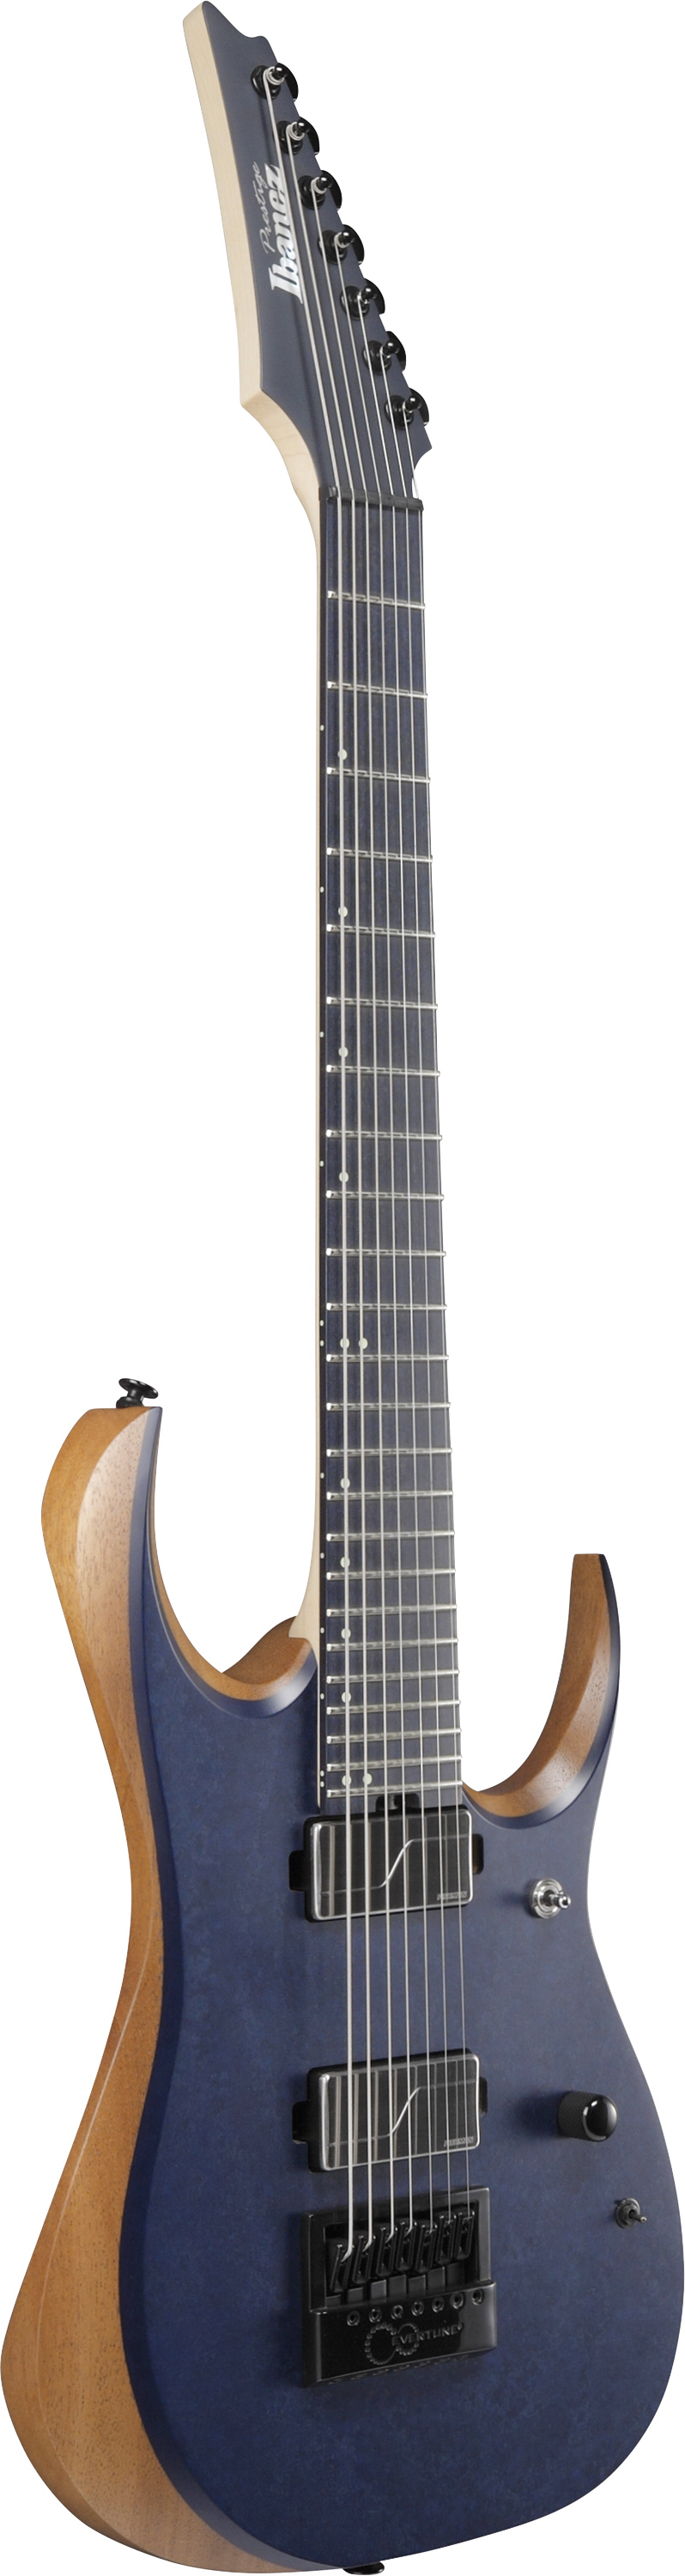 Ibanez Rgdr4527et Prestige Hh Ht Rich - Natural Flat - Str shape electric guitar - Variation 5